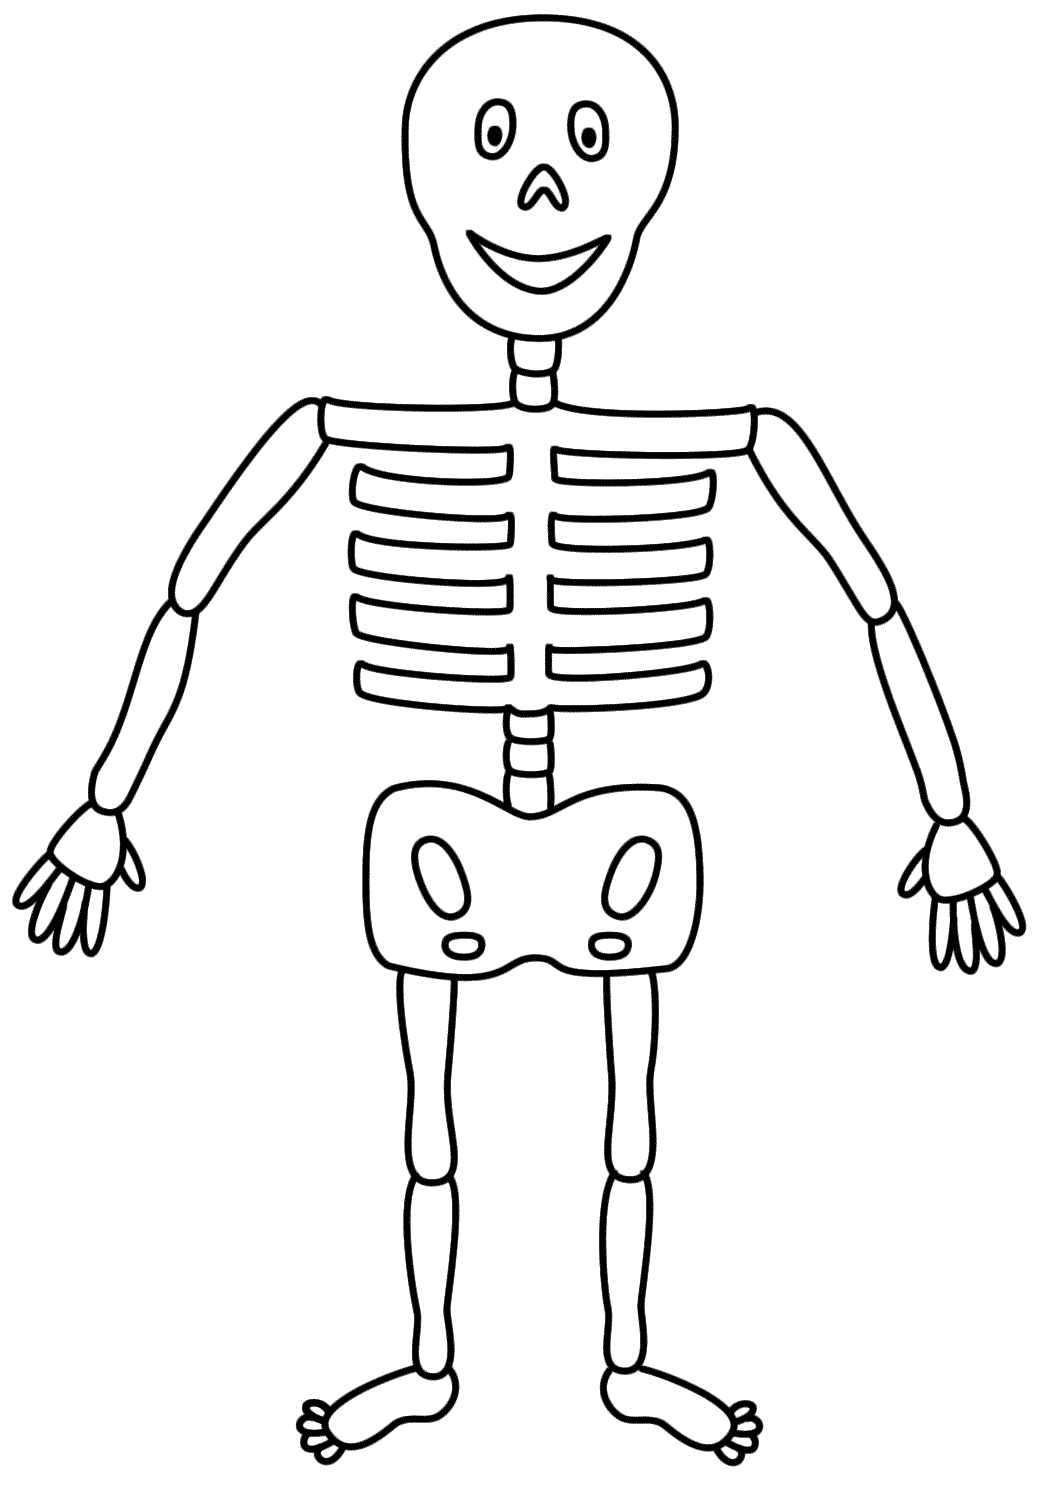 Free Skeleton For Kids, Download Free Skeleton For Kids png images ...